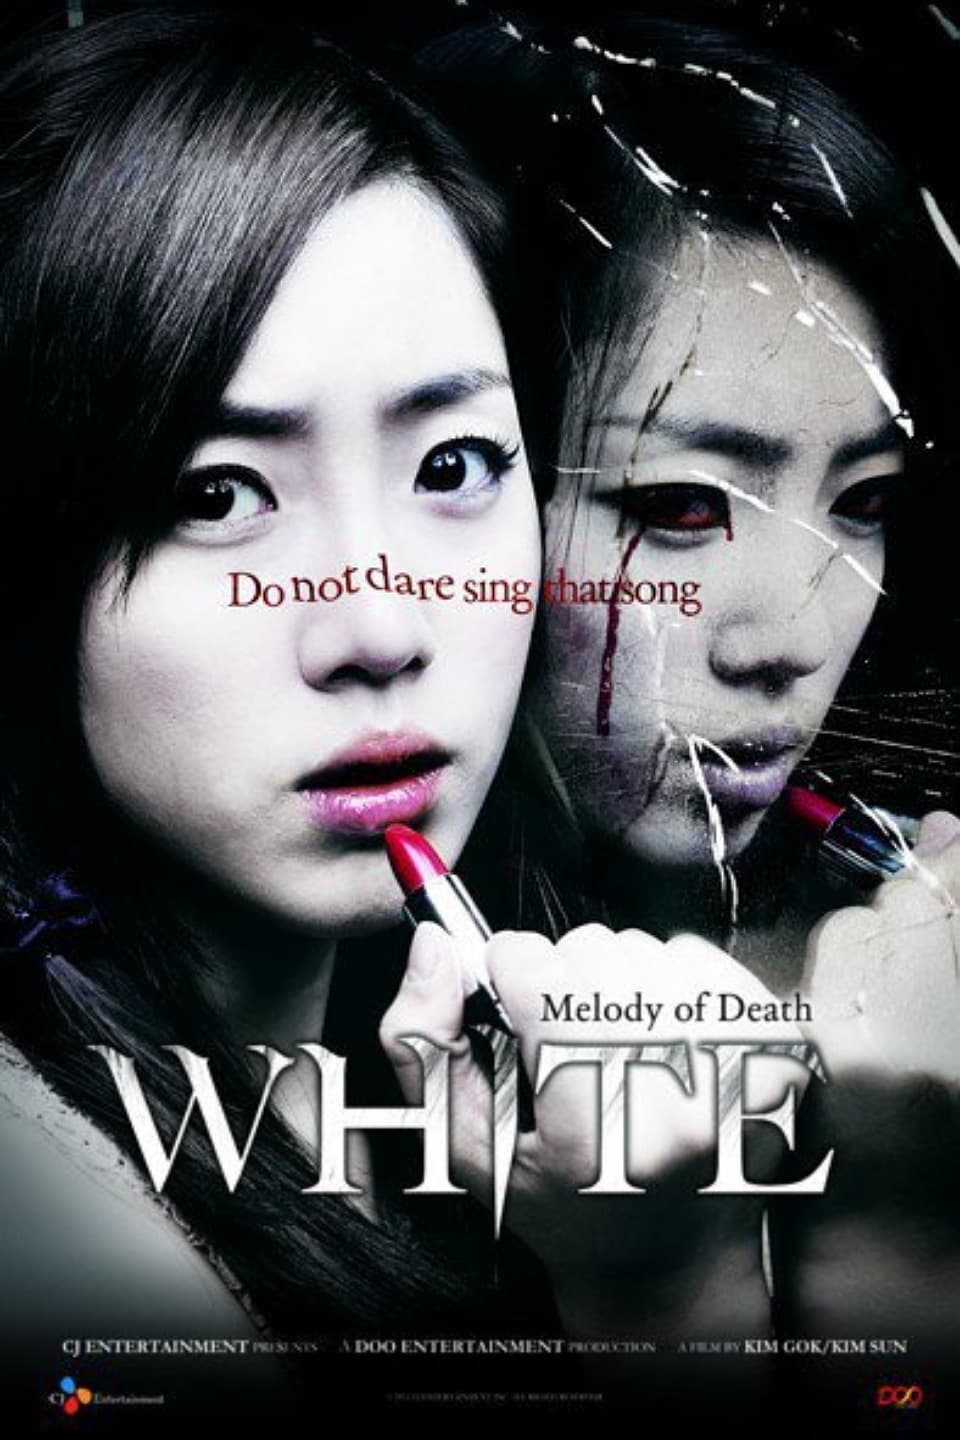 White: La Melodia Maldita (White: The Melody of the Curse)